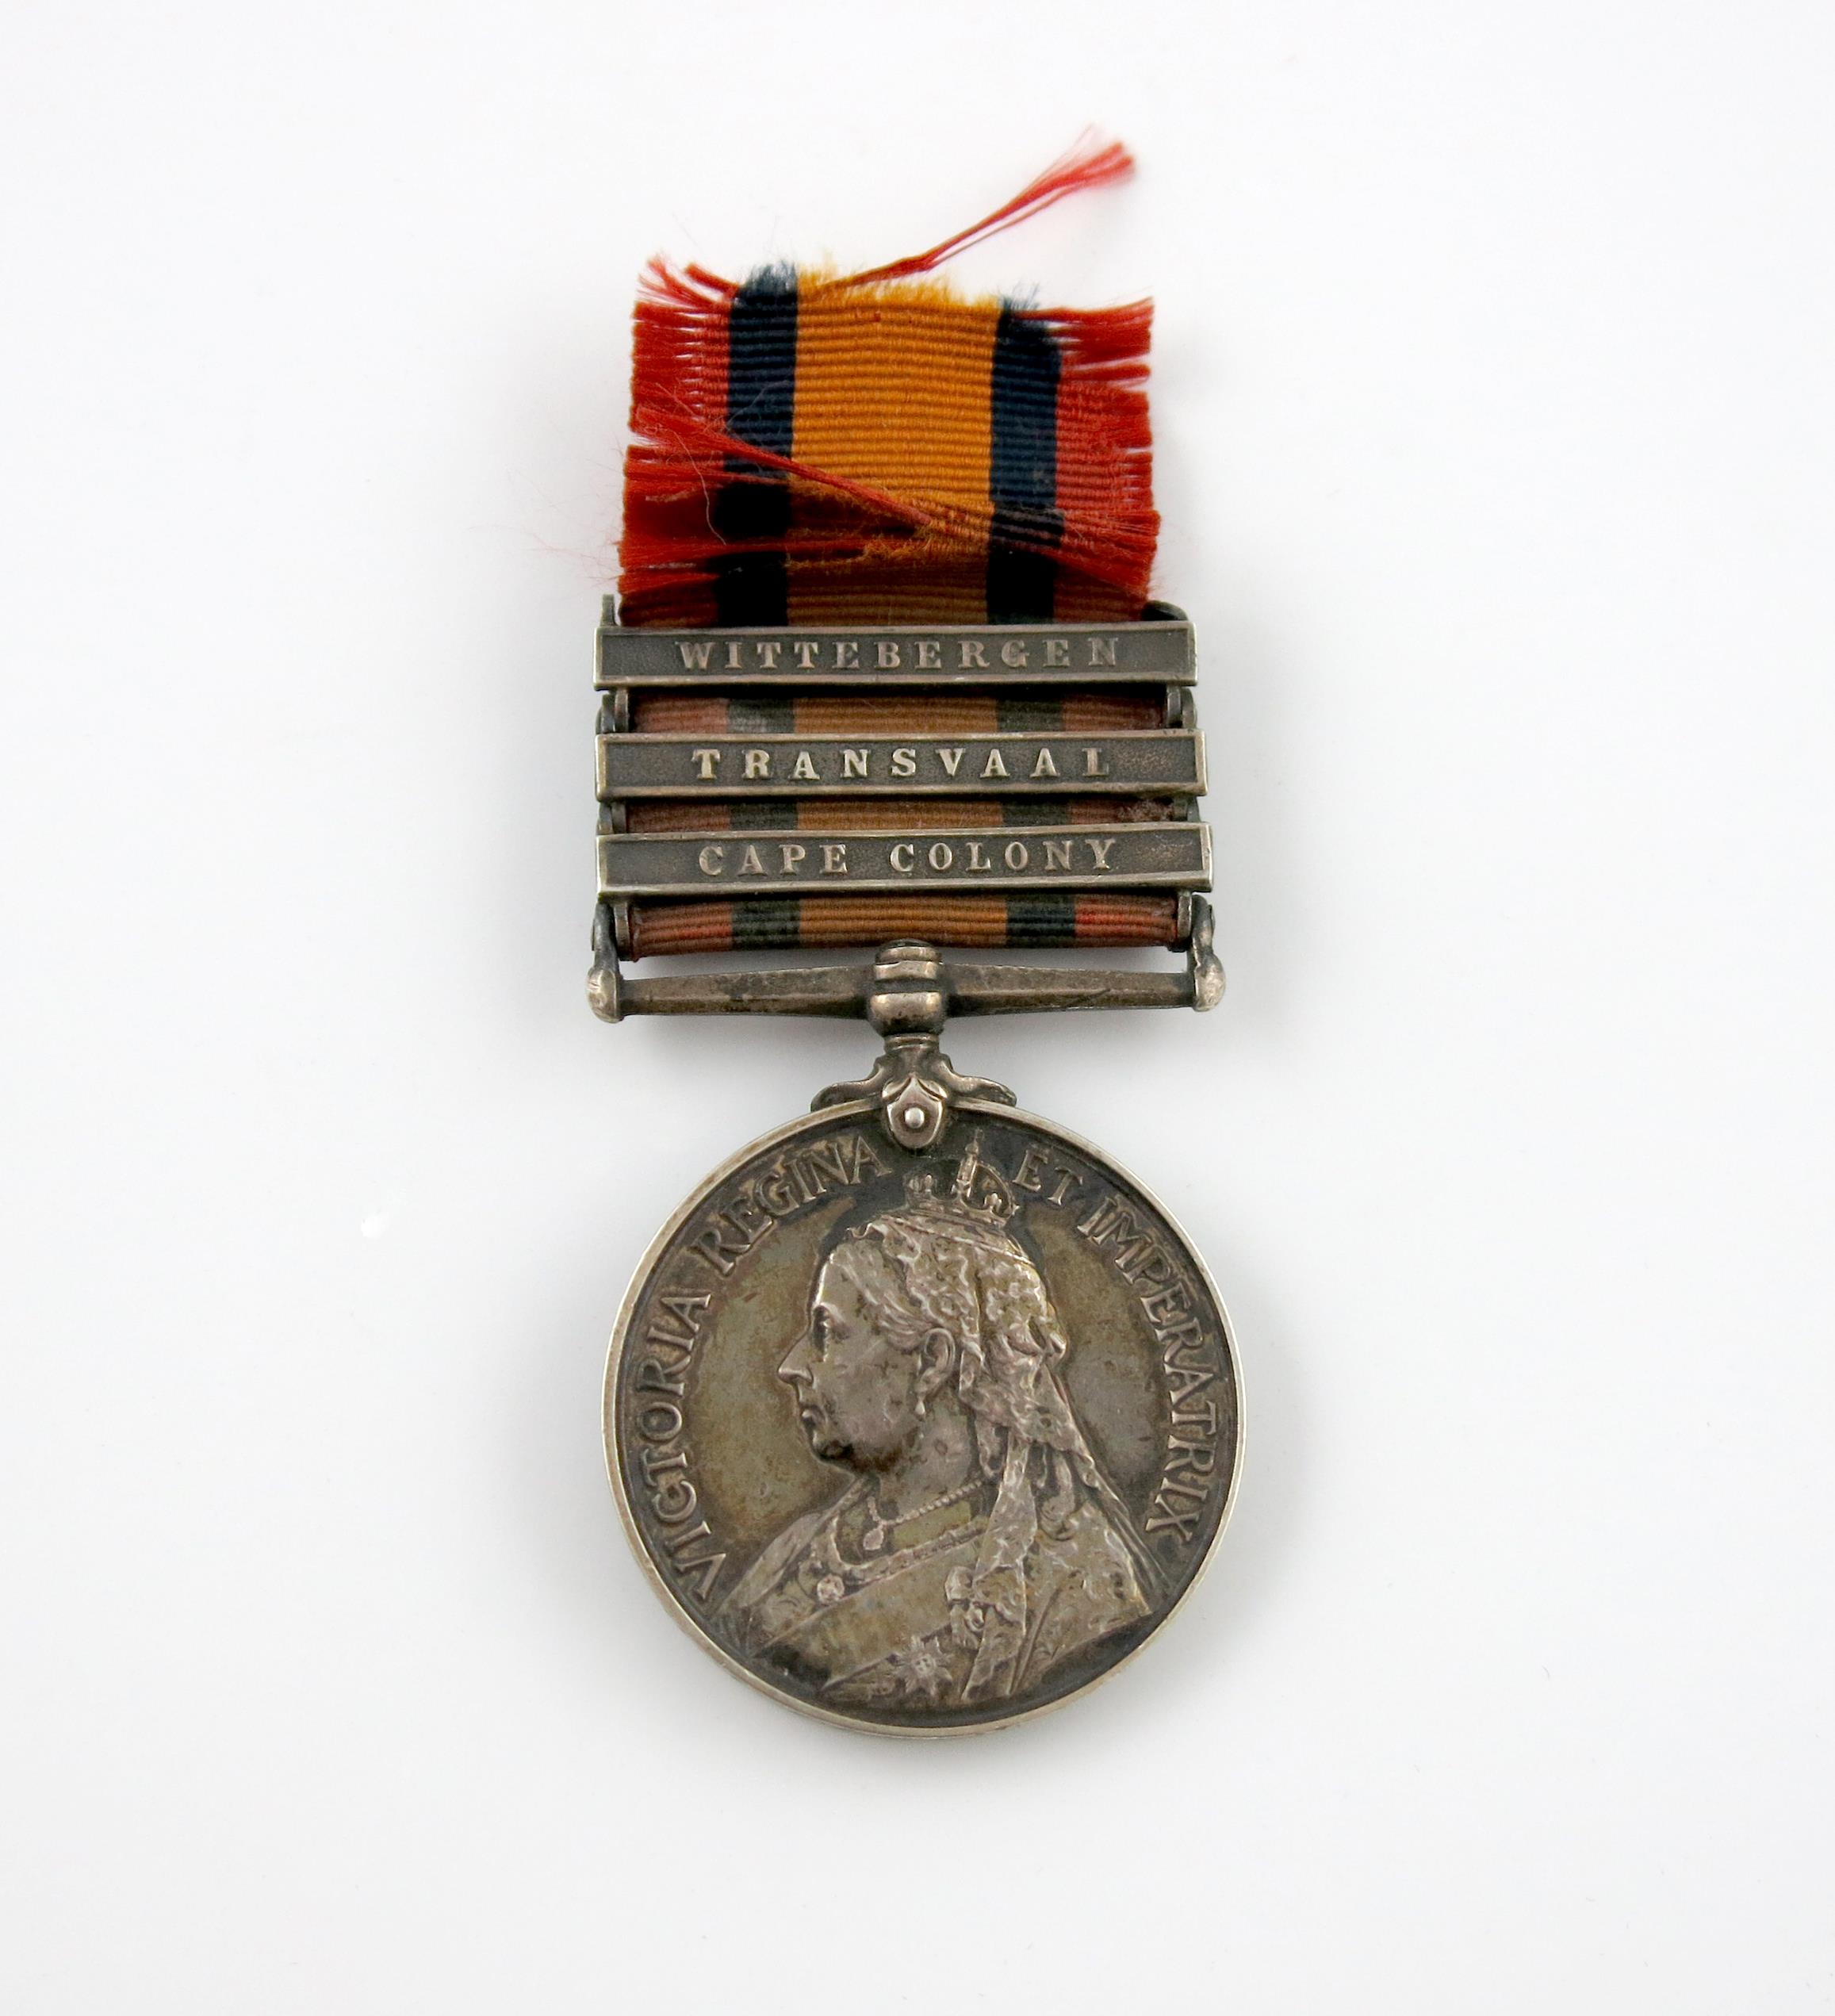 Boer War, Queen's South Africa medal, 1899-1902, 3 clasps, CC, Traans, Witt, eng. slanting caps (